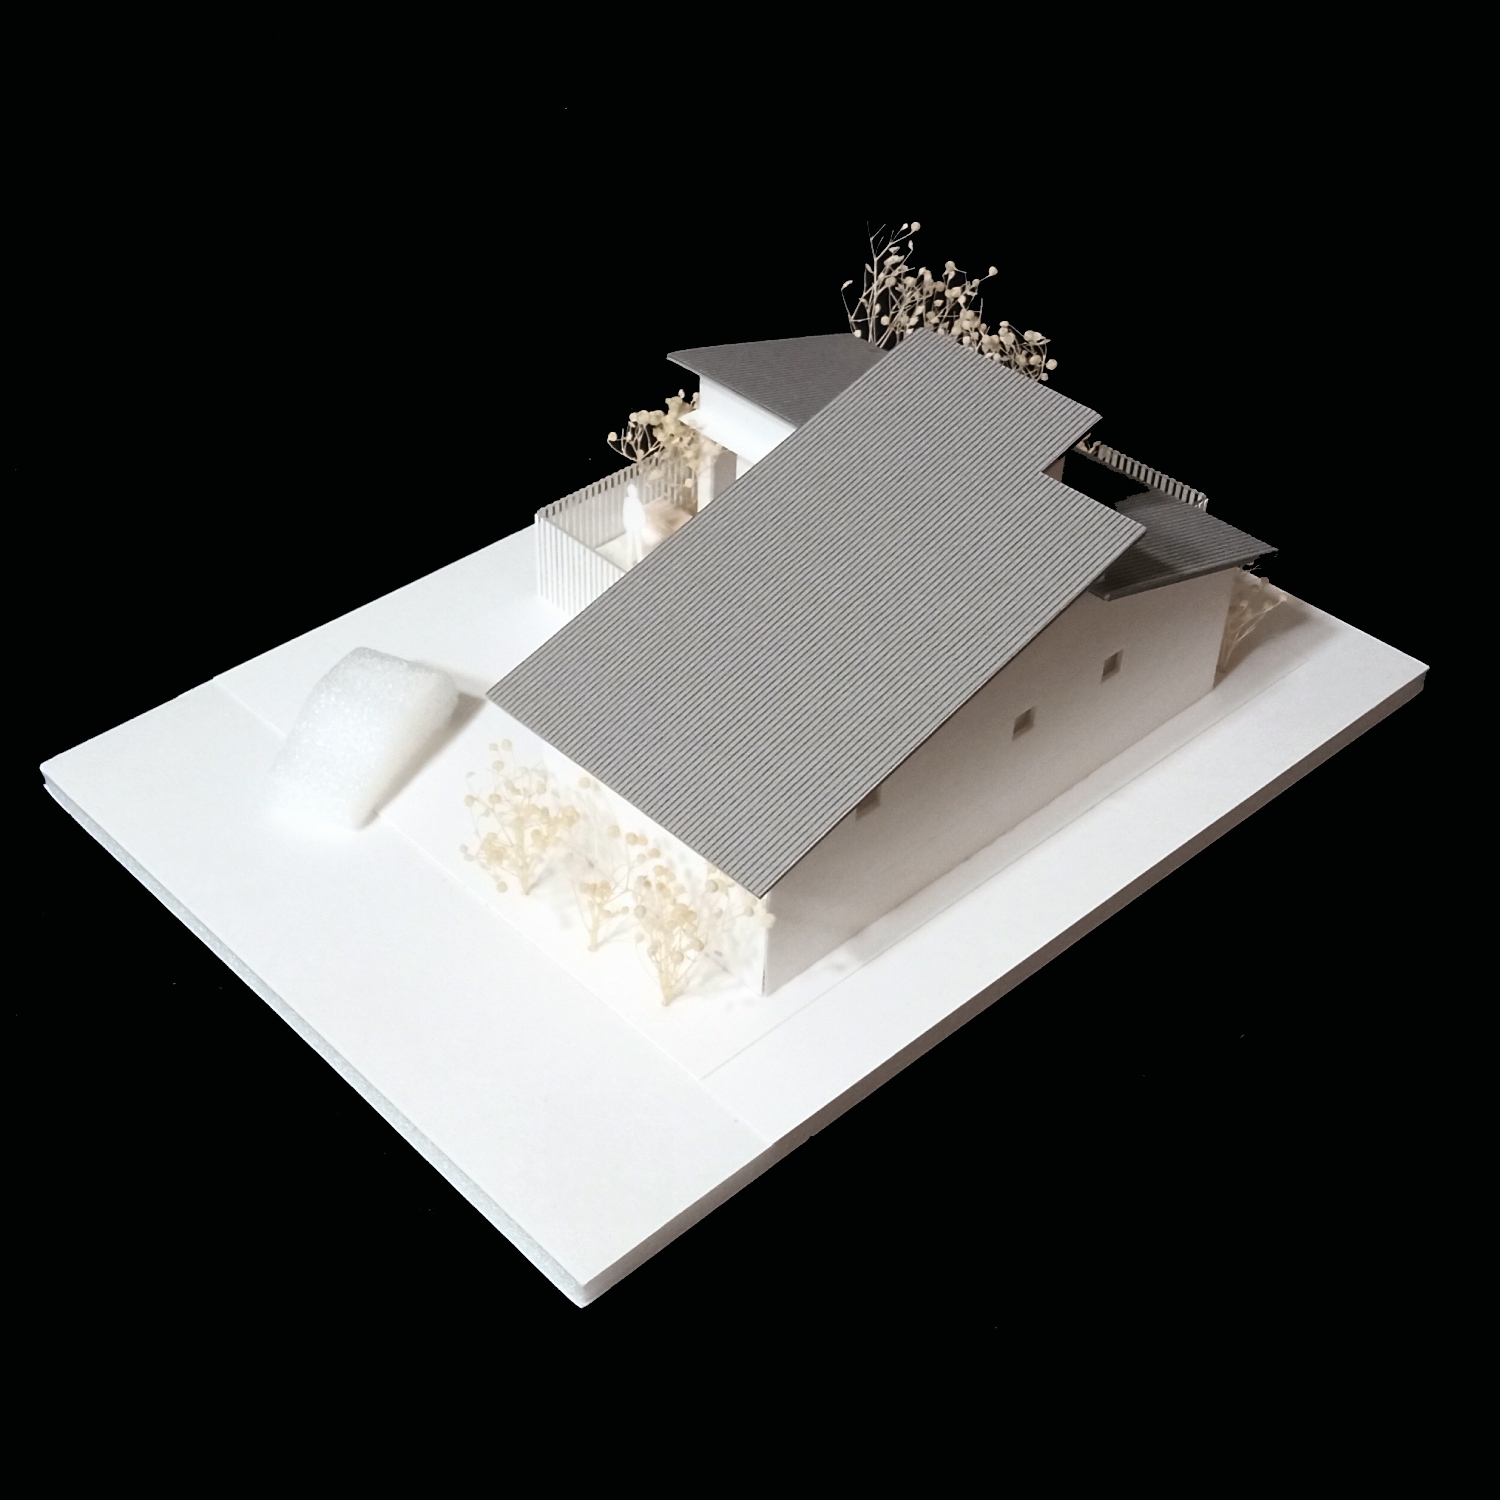 小さな平屋の住宅模型